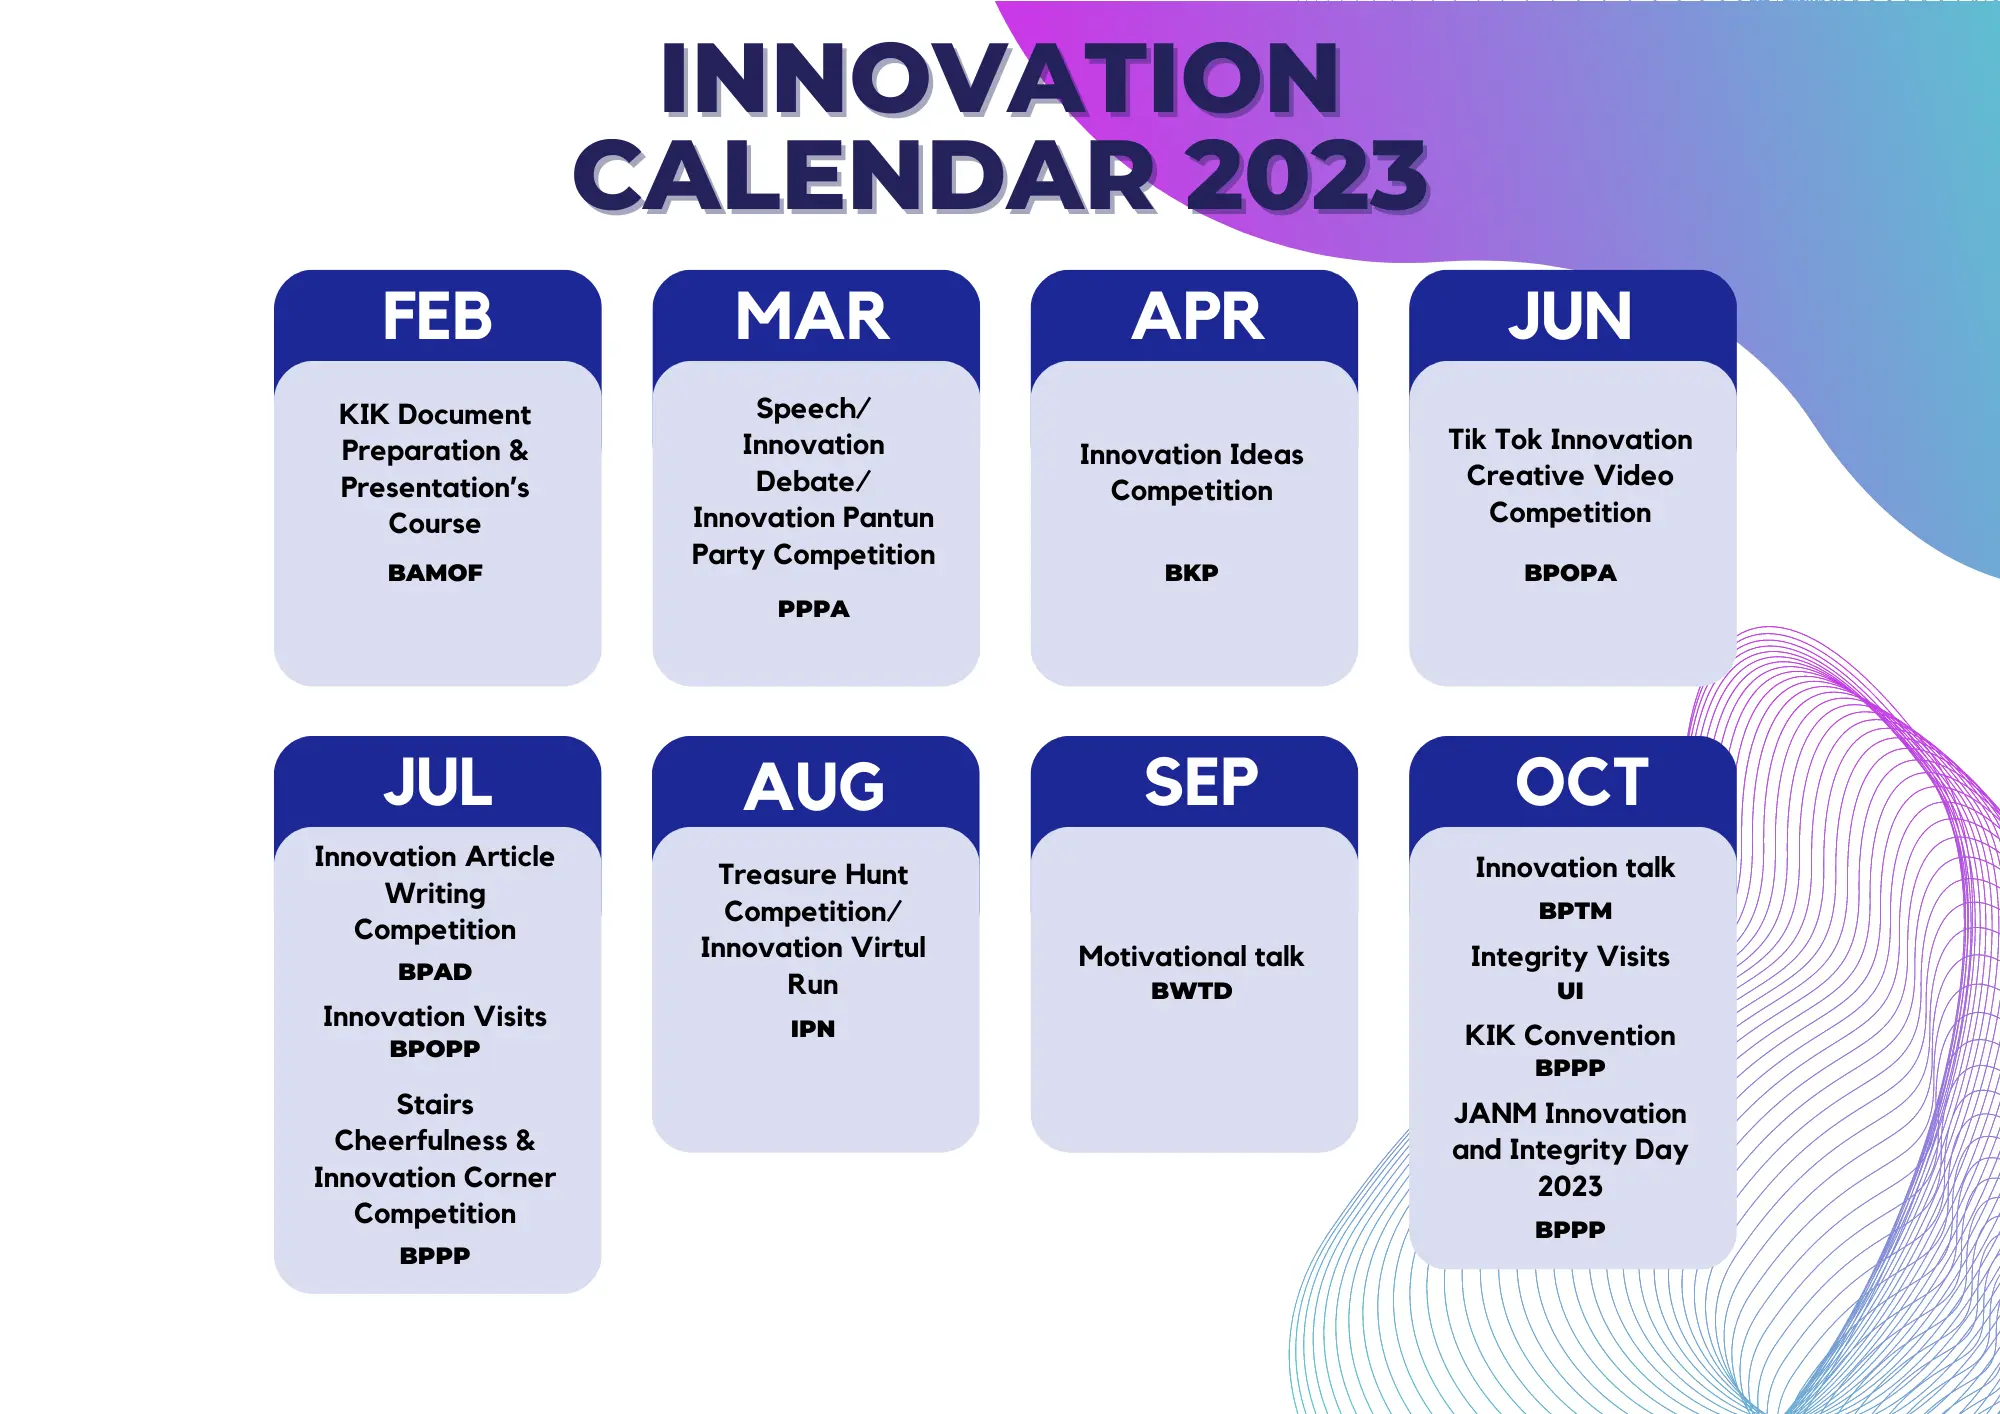 kalendar inovasi 2022